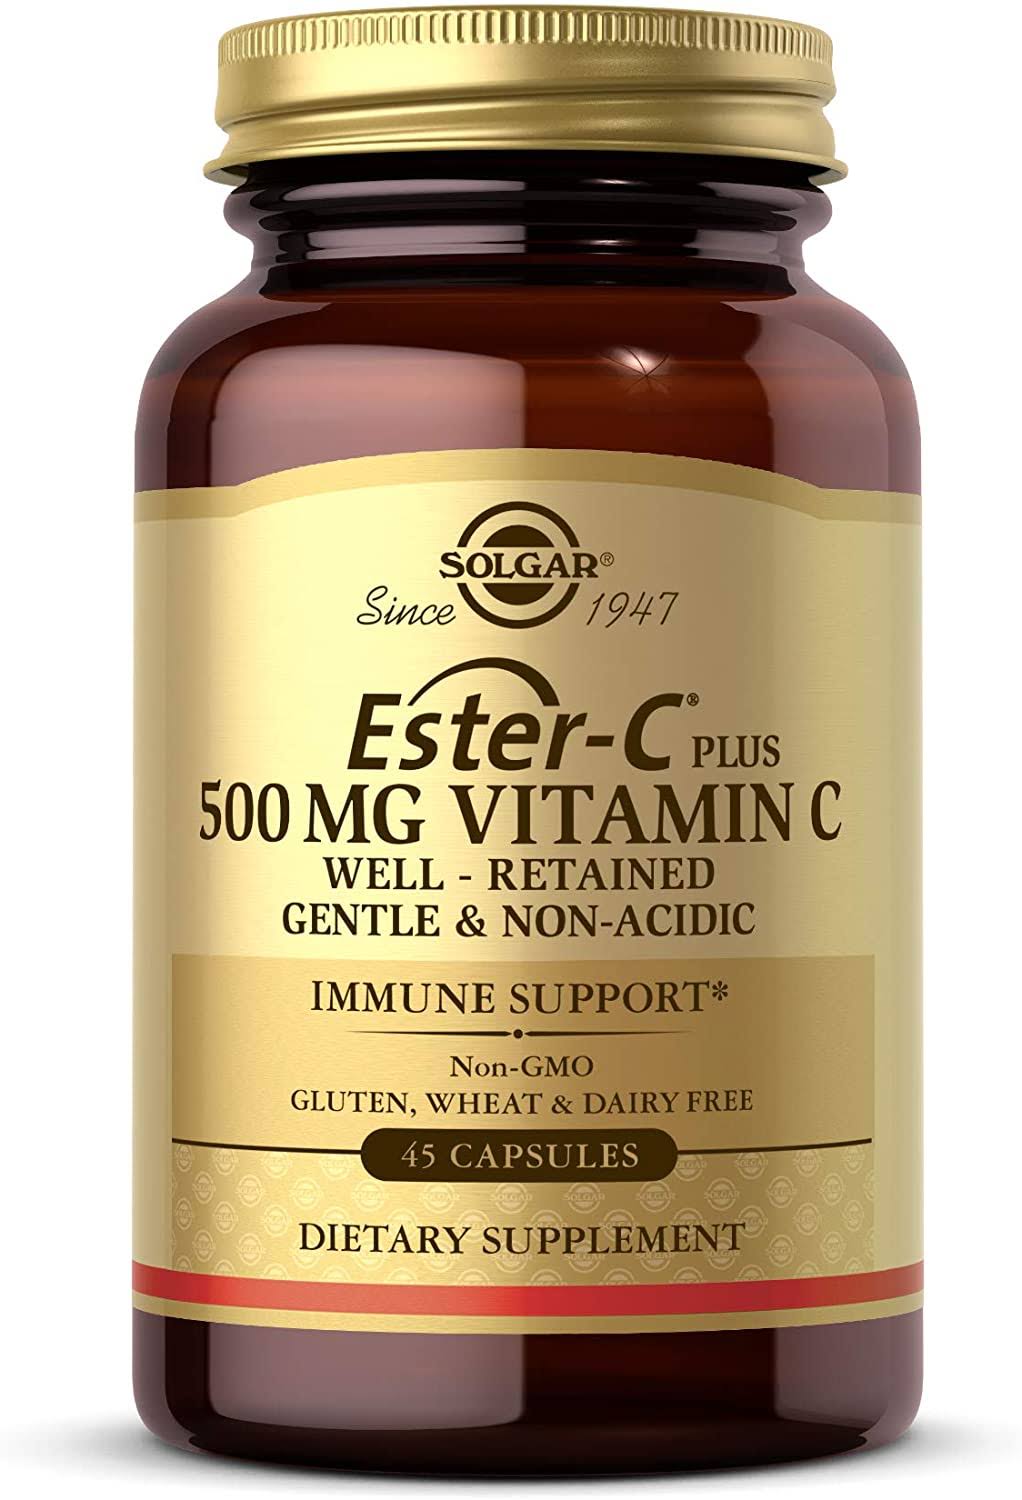 Solgar Ester-C Plus 500 mg Vitamin C 45 Capsules